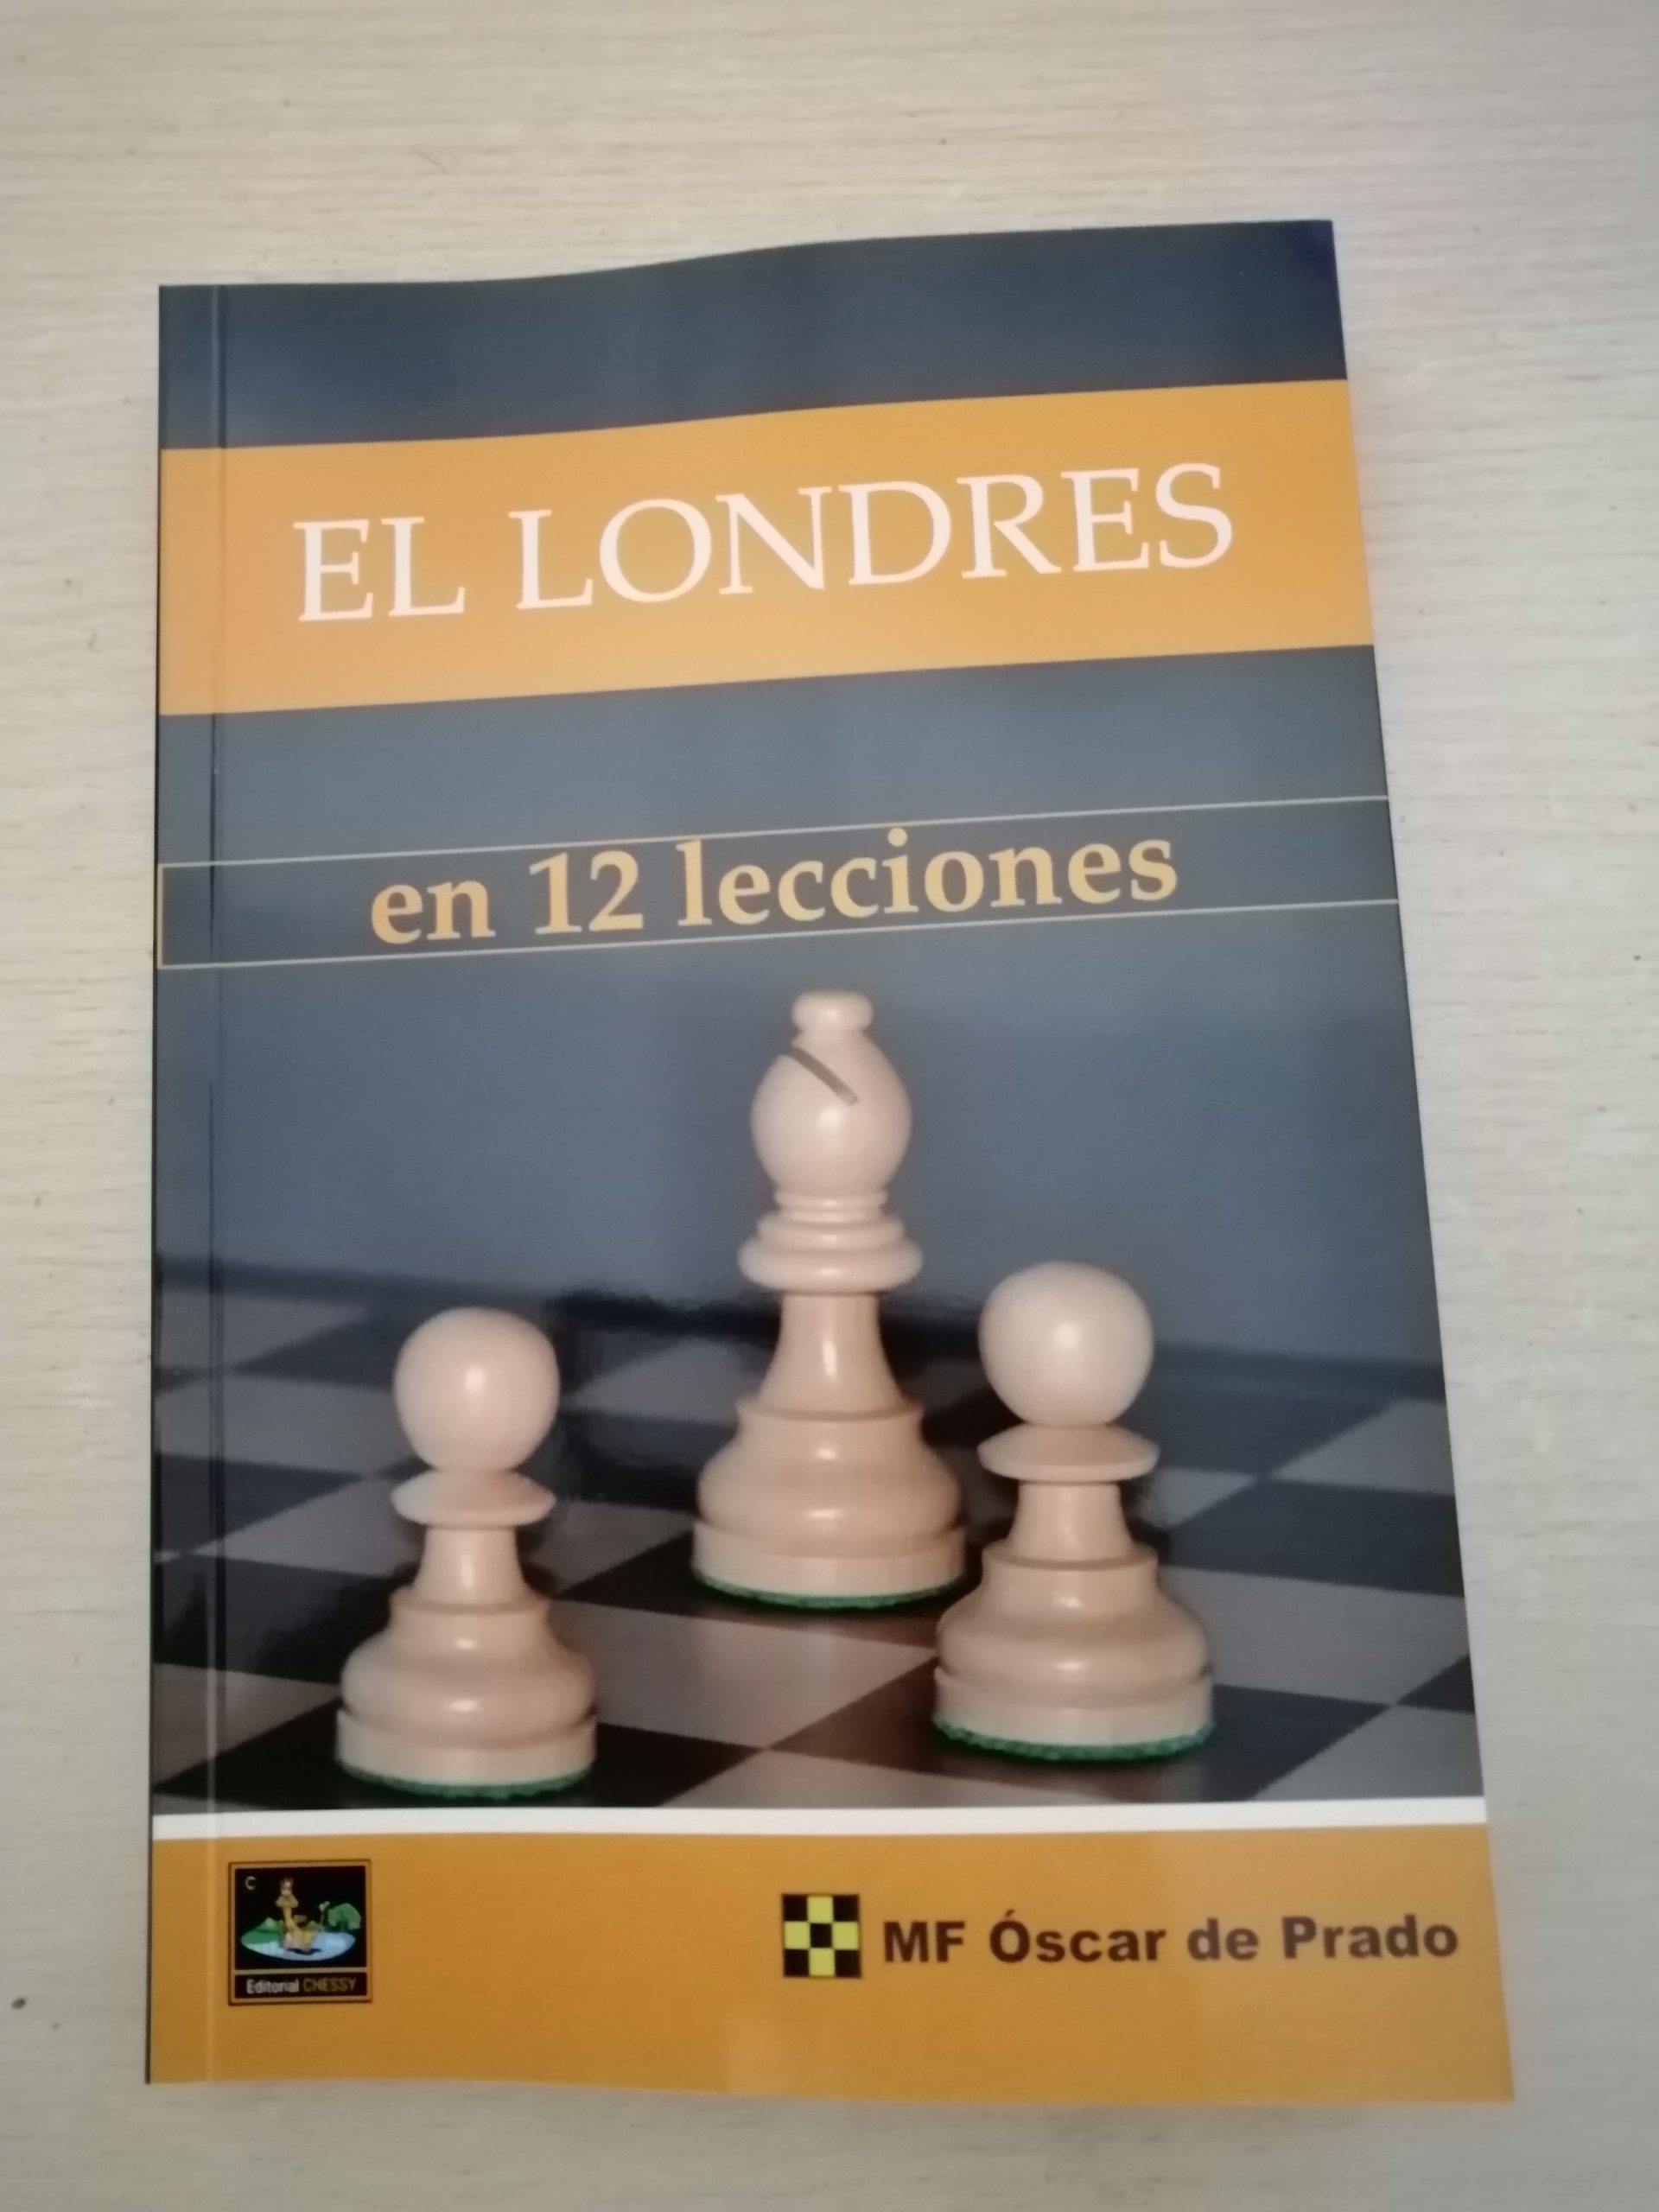 Nuevo libro “El Londres en 12 lecciones”